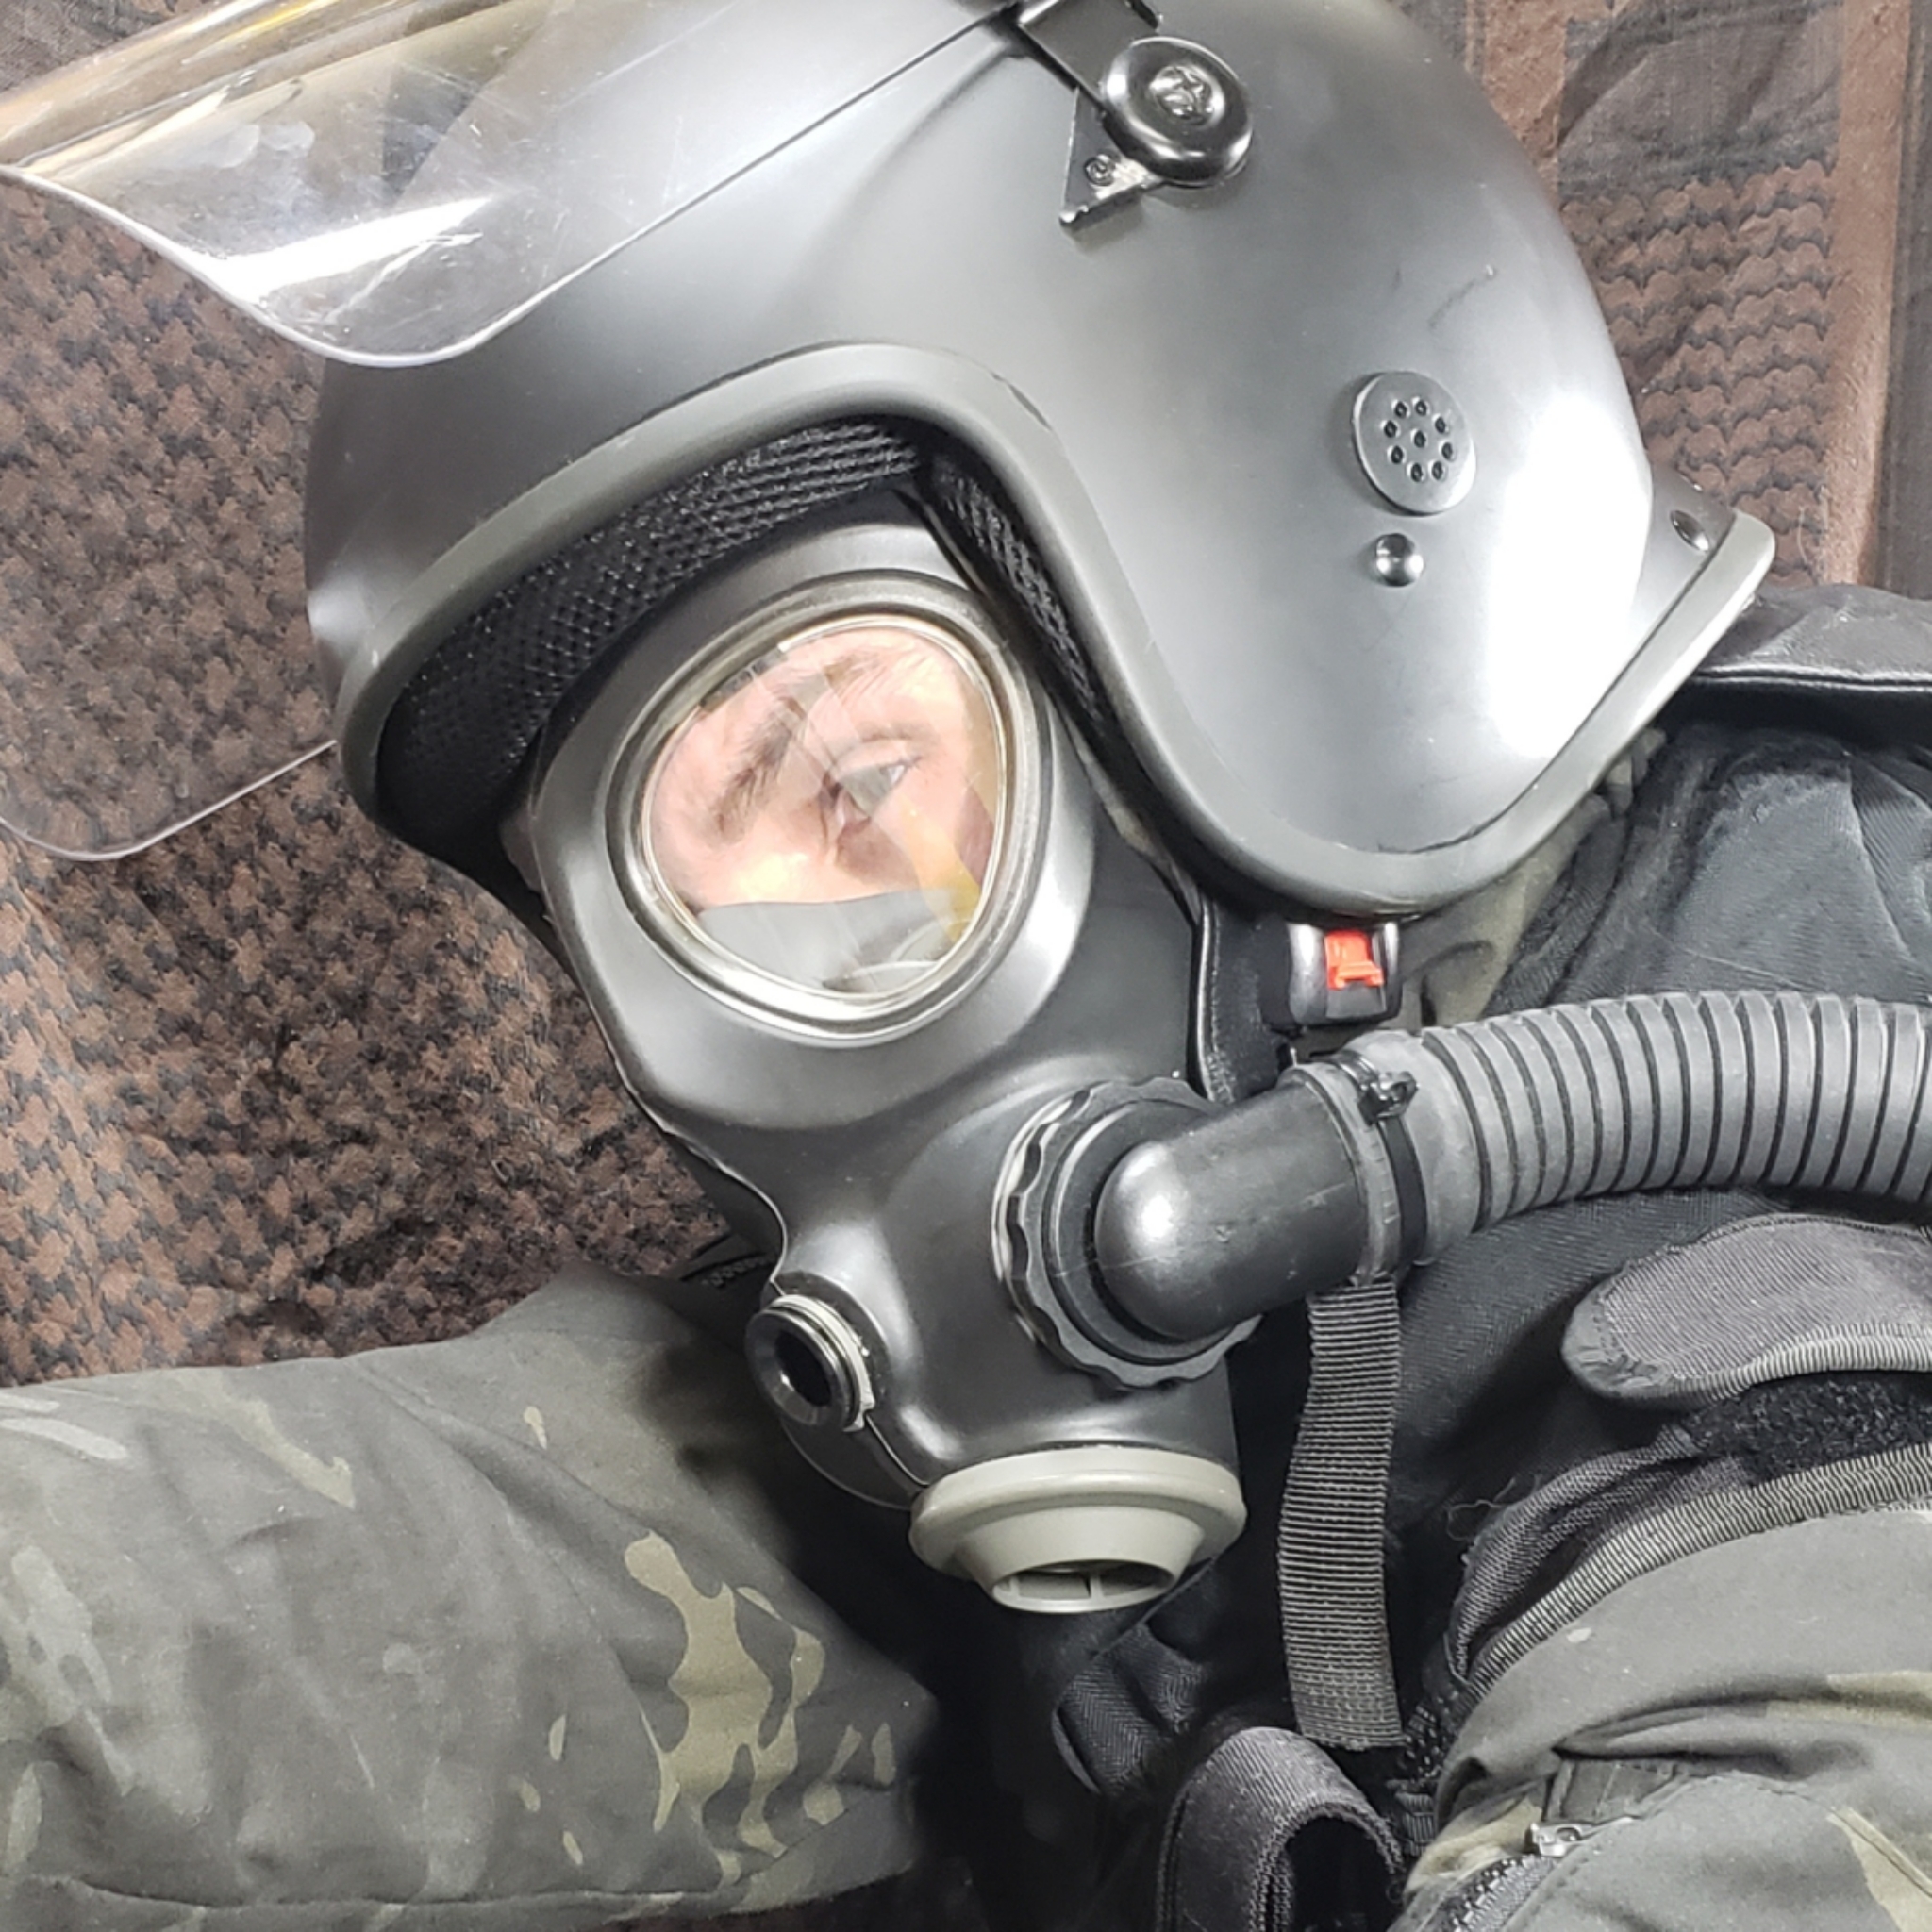 SCOTT M95 gas mask